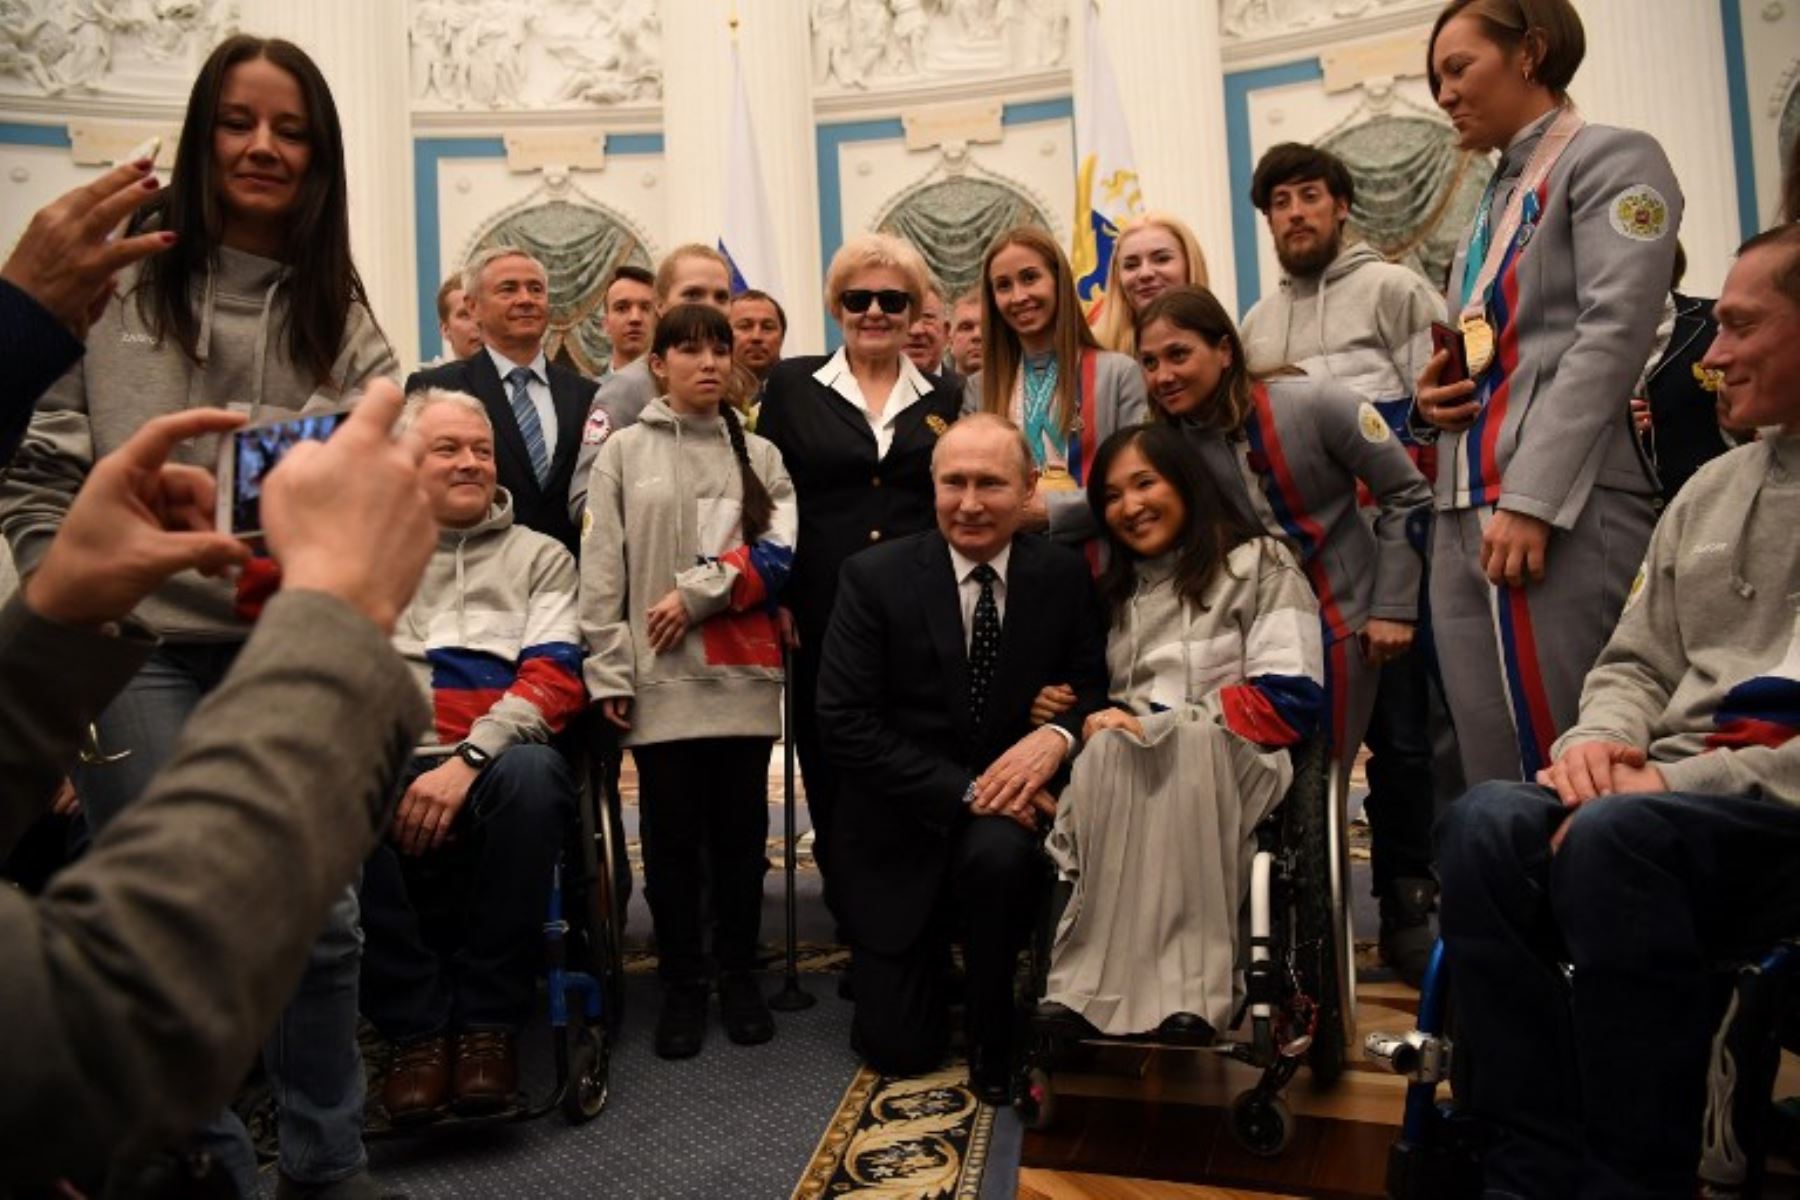 Vladimir Putin posa con los medallistas de los Juegos Paralímpicos de Invierno Pyeongchang 2018 después de una ceremonia de premiación en el Kremlin en Moscú.Foto:AFP